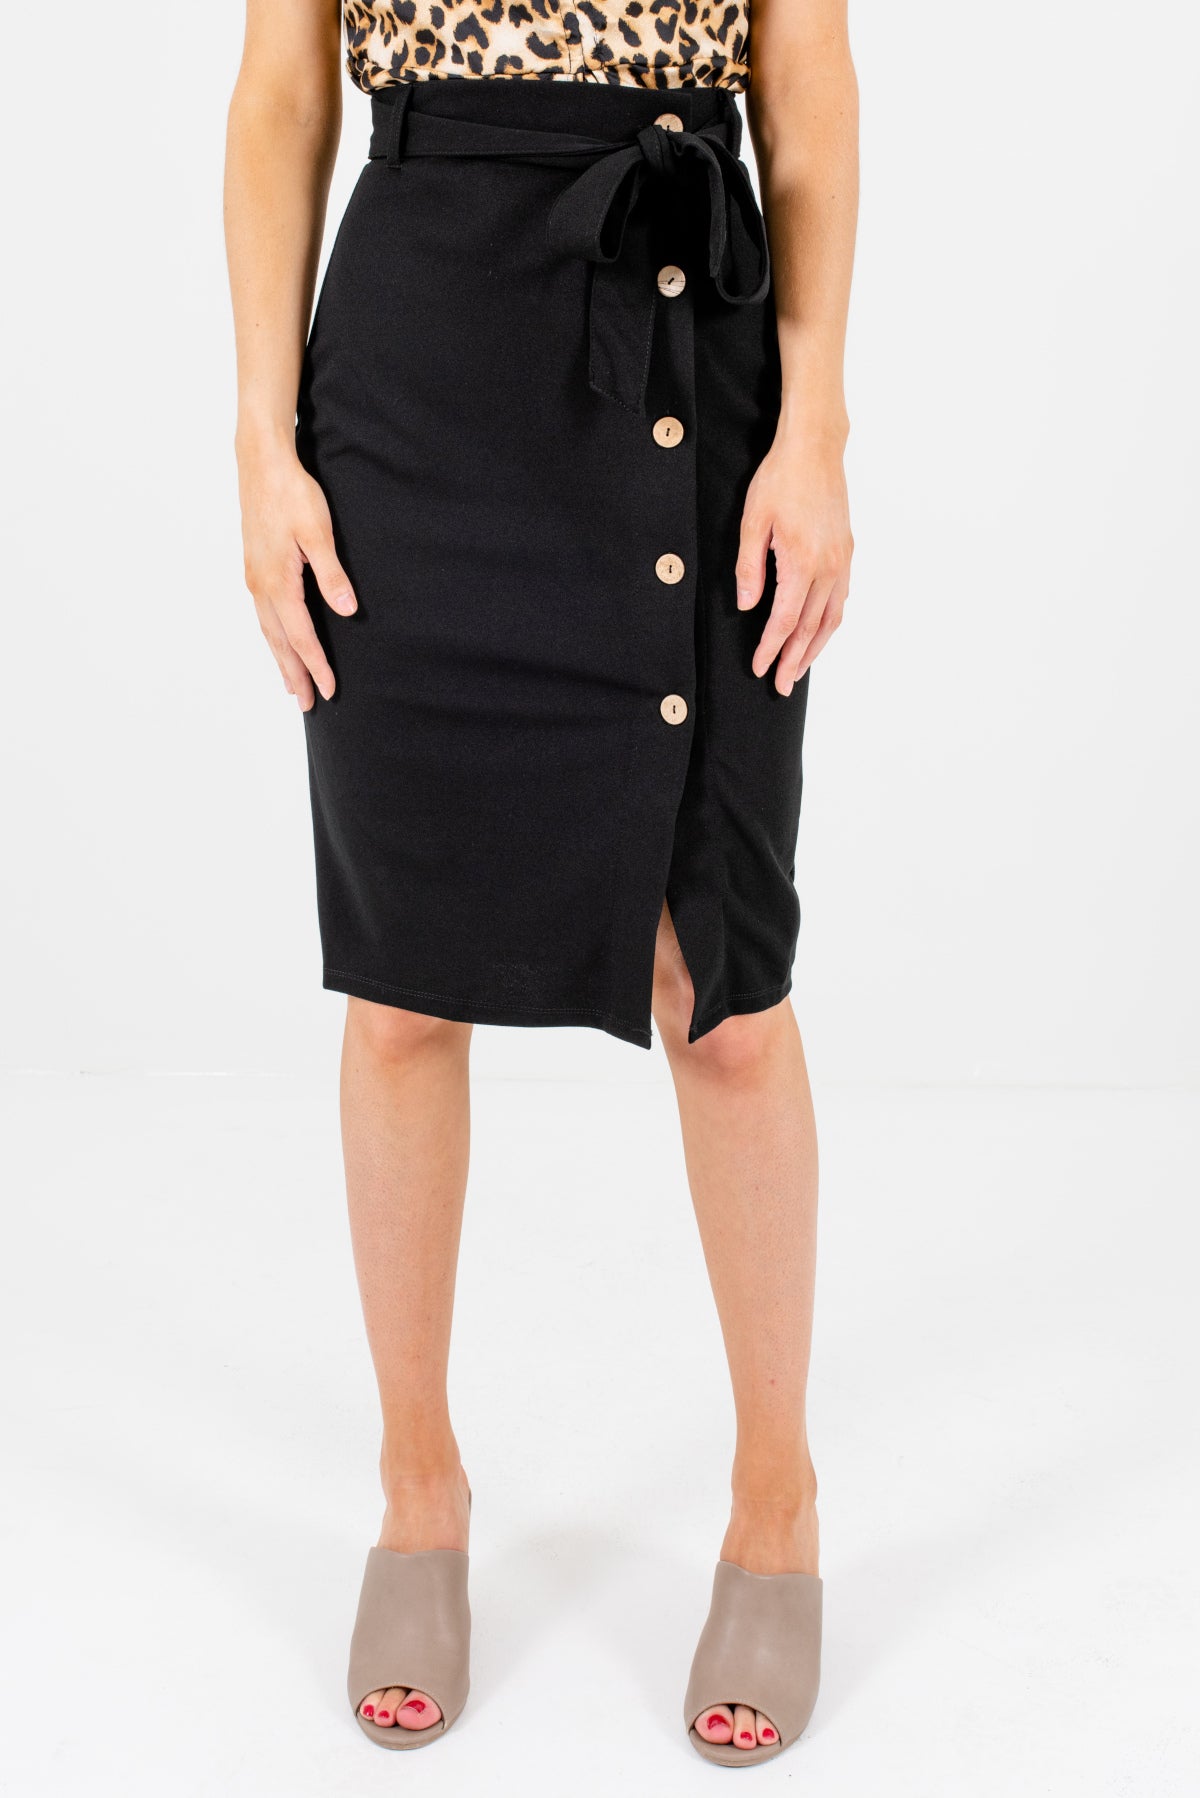 knee length black skirts uk